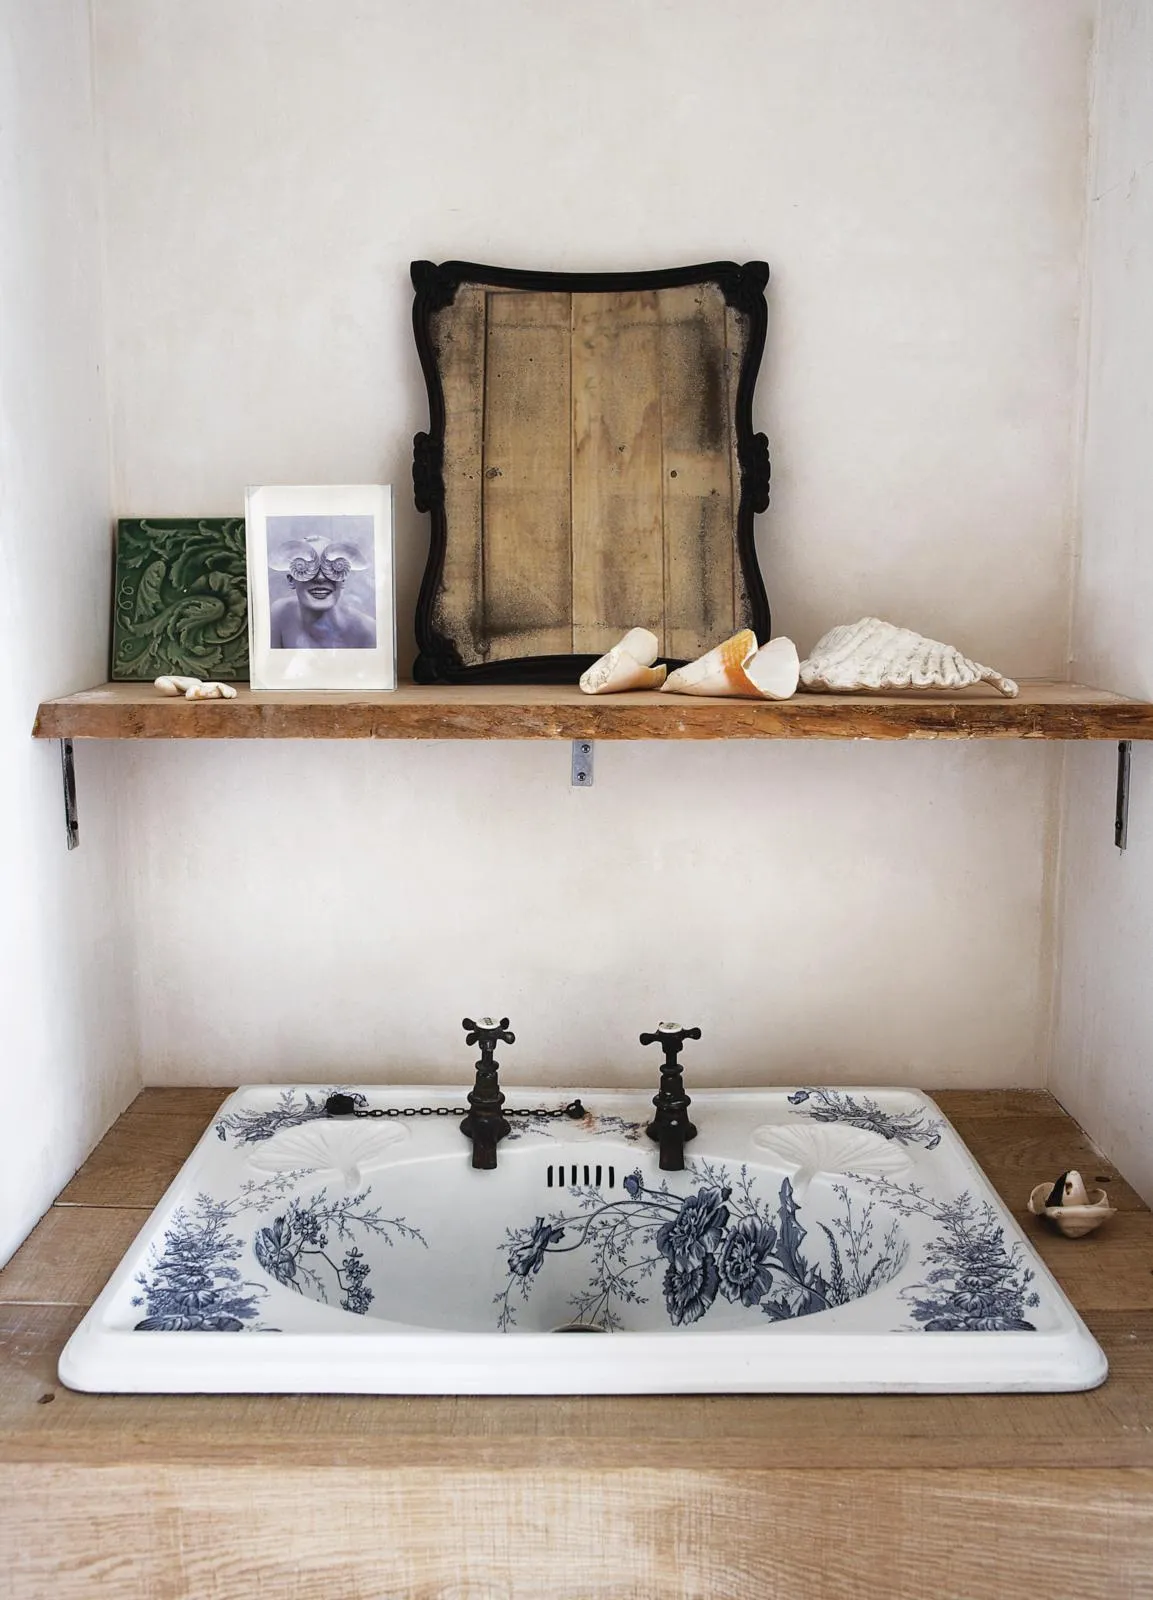 Victorian artisan cottage bathroom sink